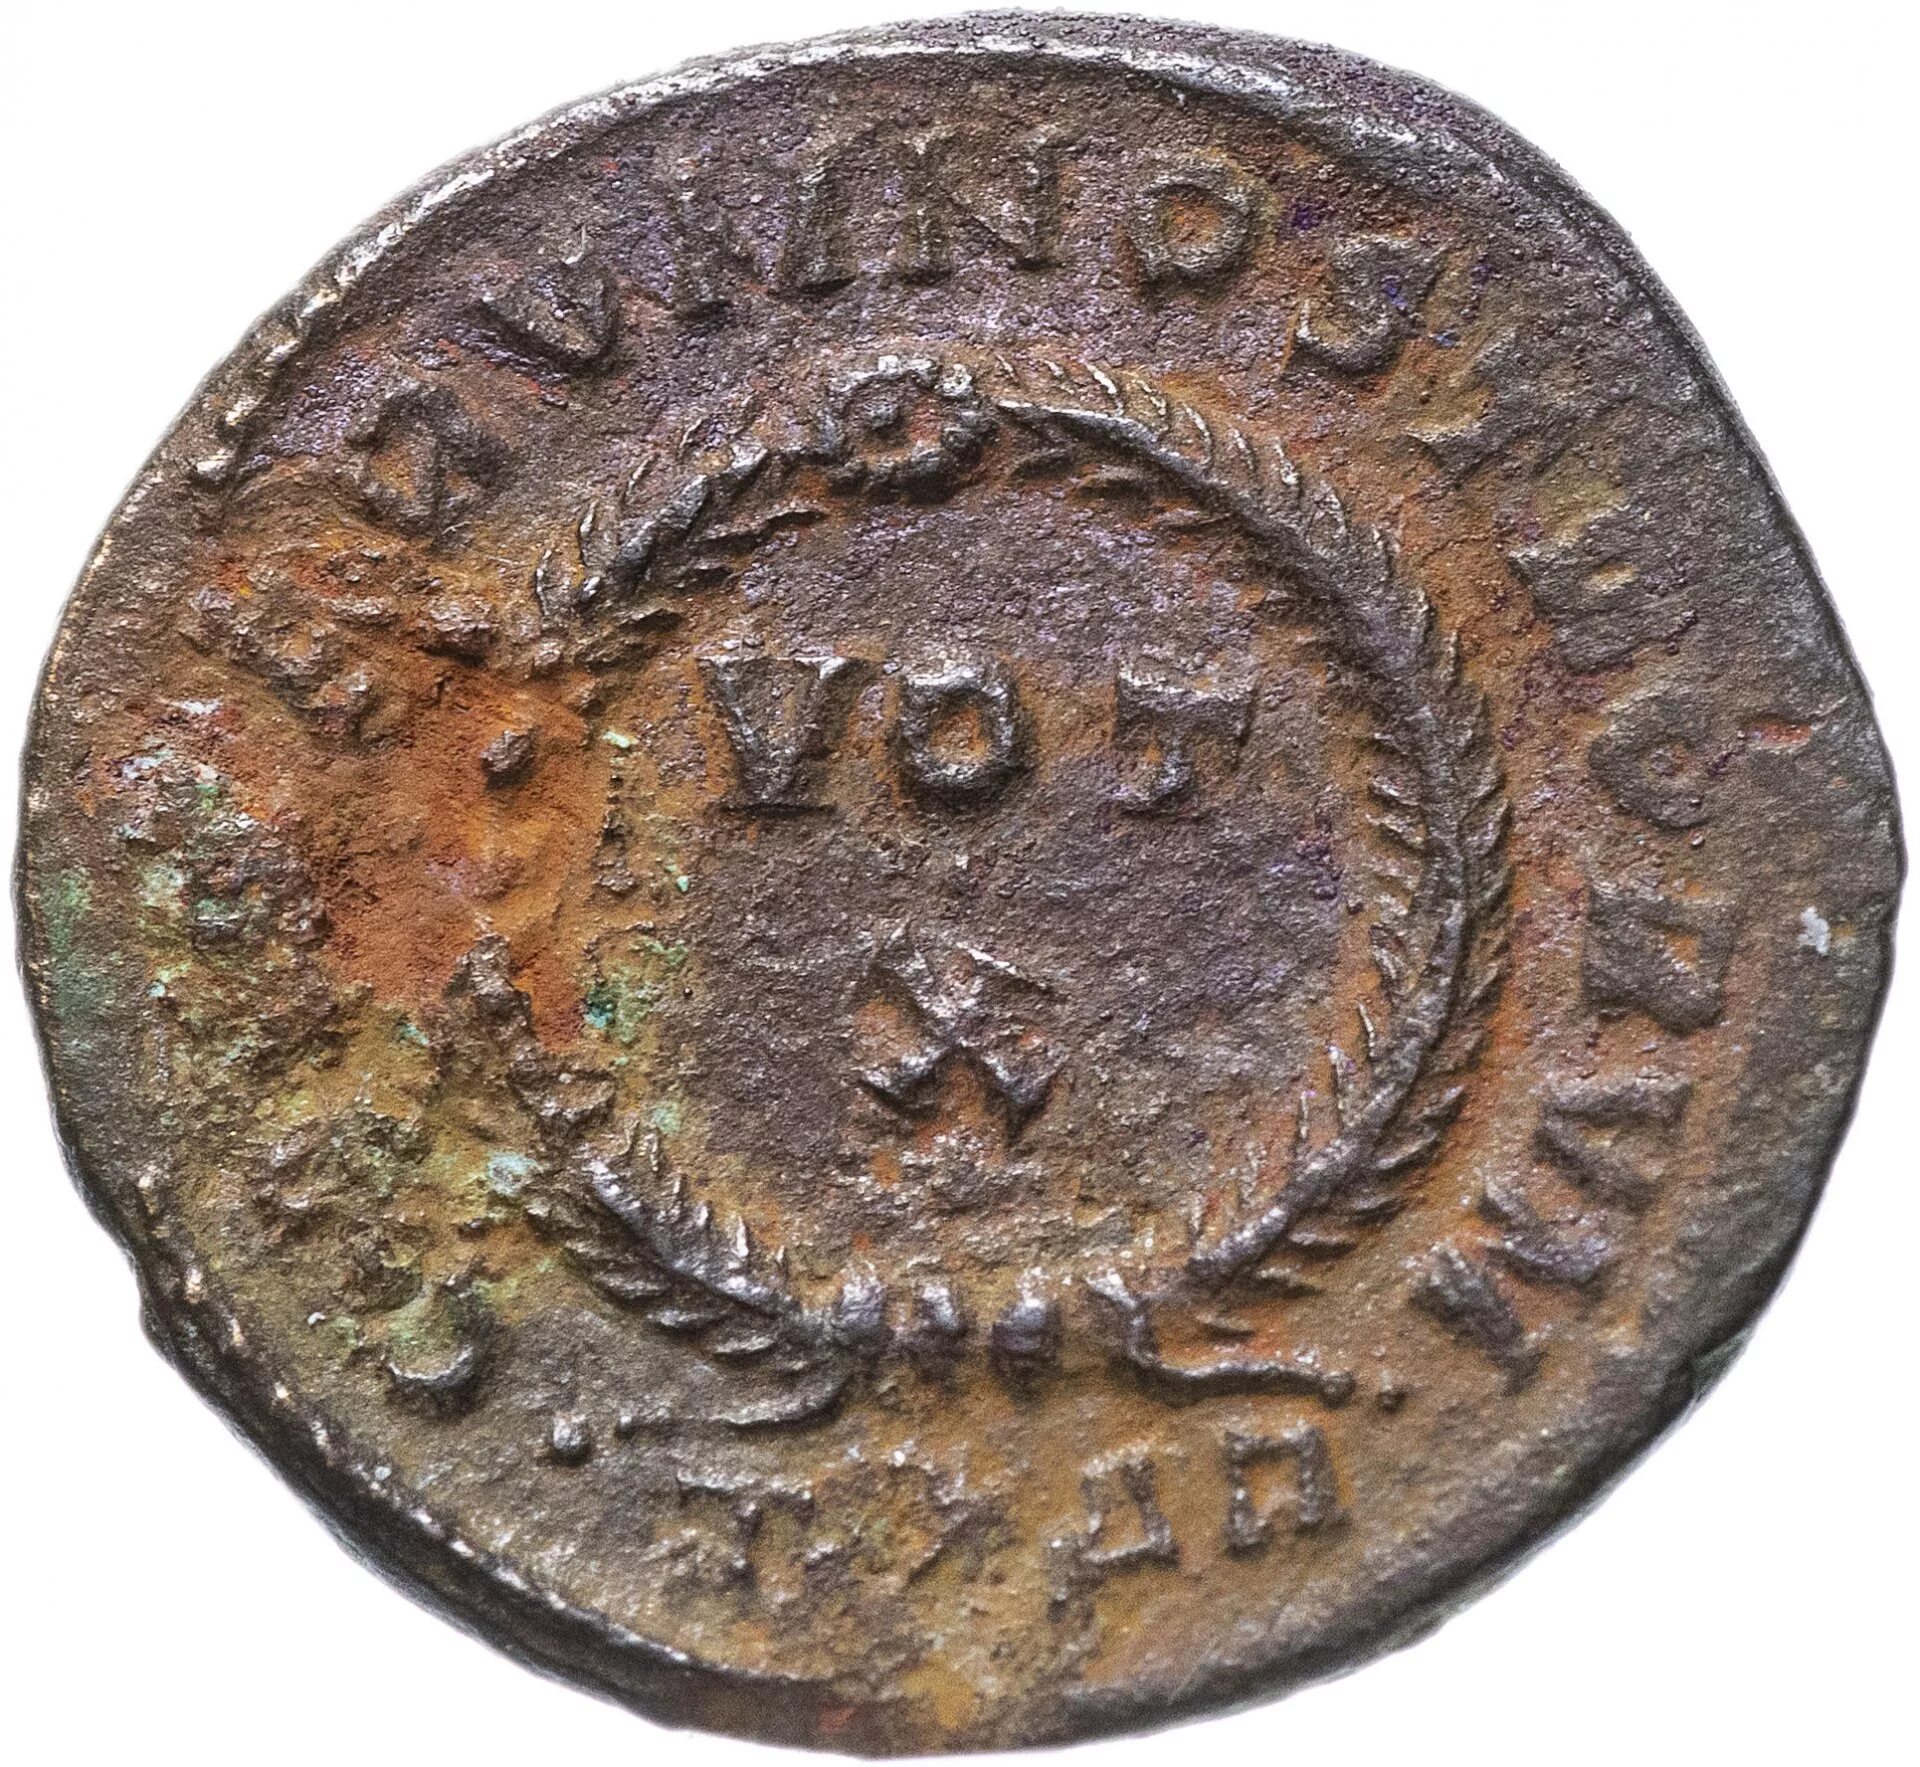 Монета Римская Империя, Крисп, 317-326 годы, нуммий.. Римская Империя монета 1 фоллис. Старинная монета Магдебург 1475 год. Старые монеты. Старая монета 4